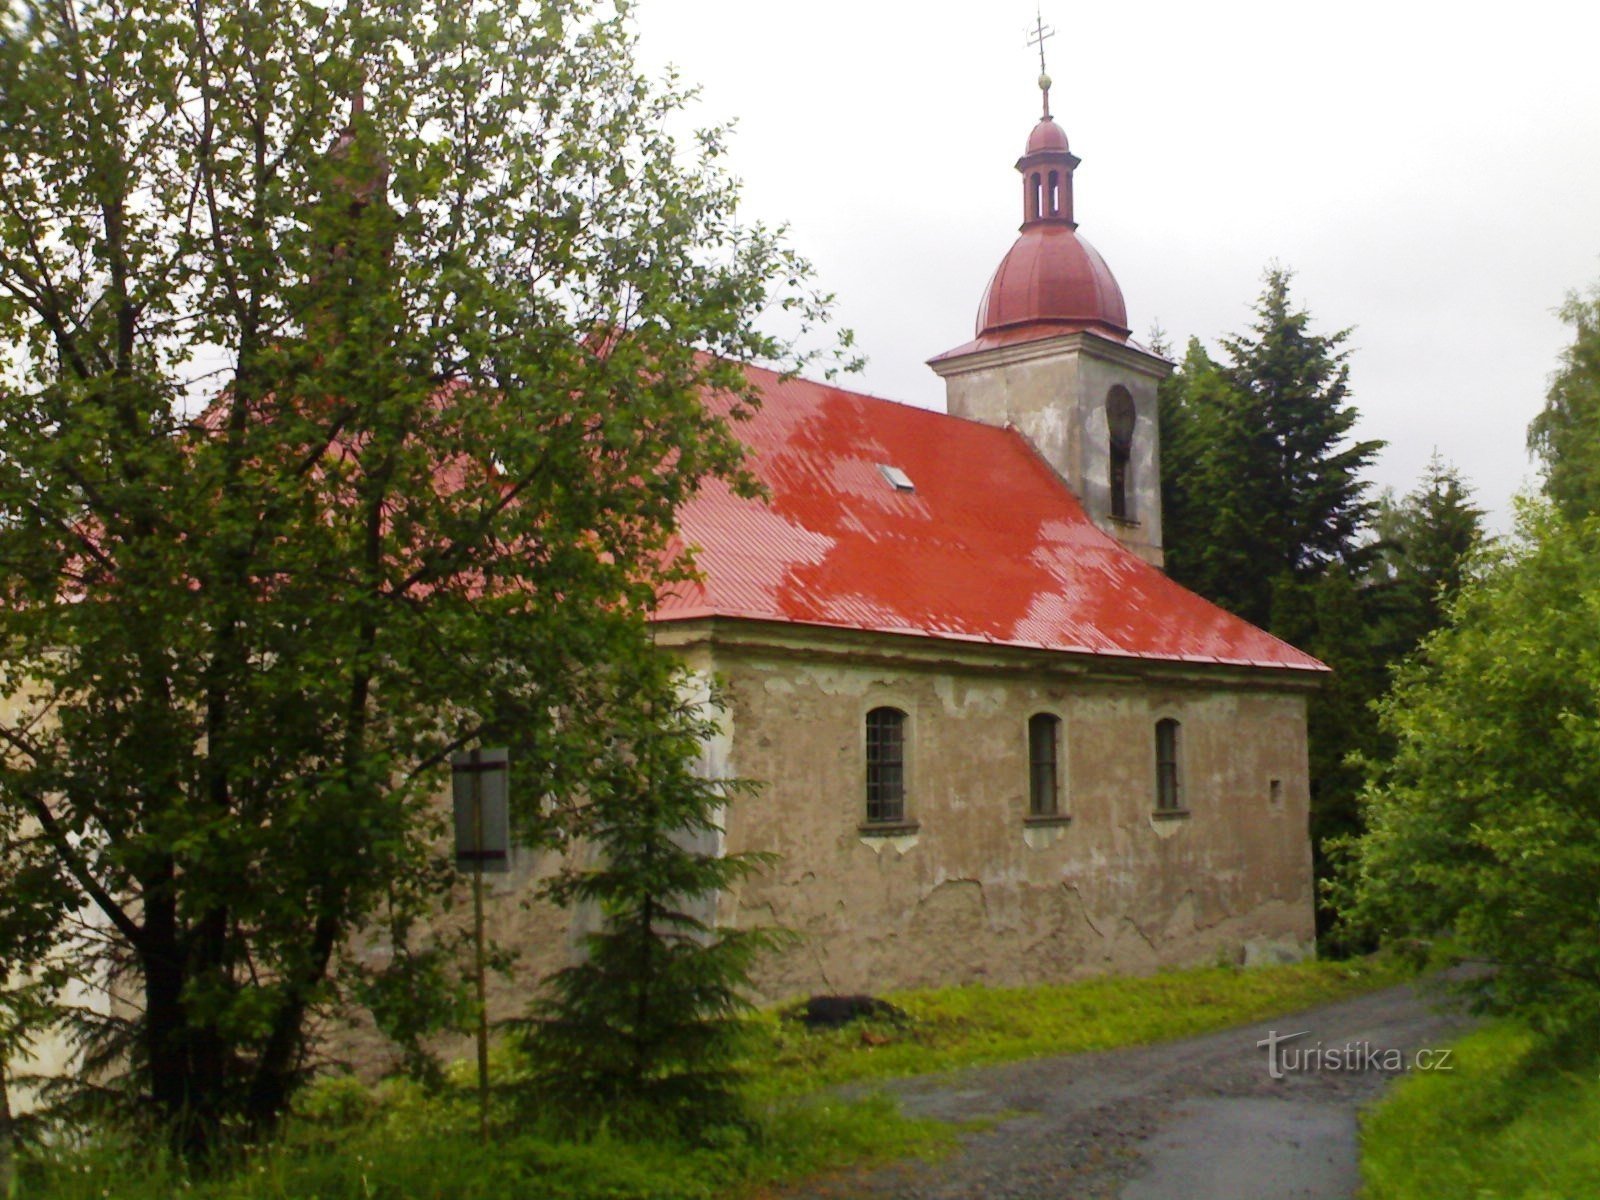 Dobnice - crkva Dobrog Pastira